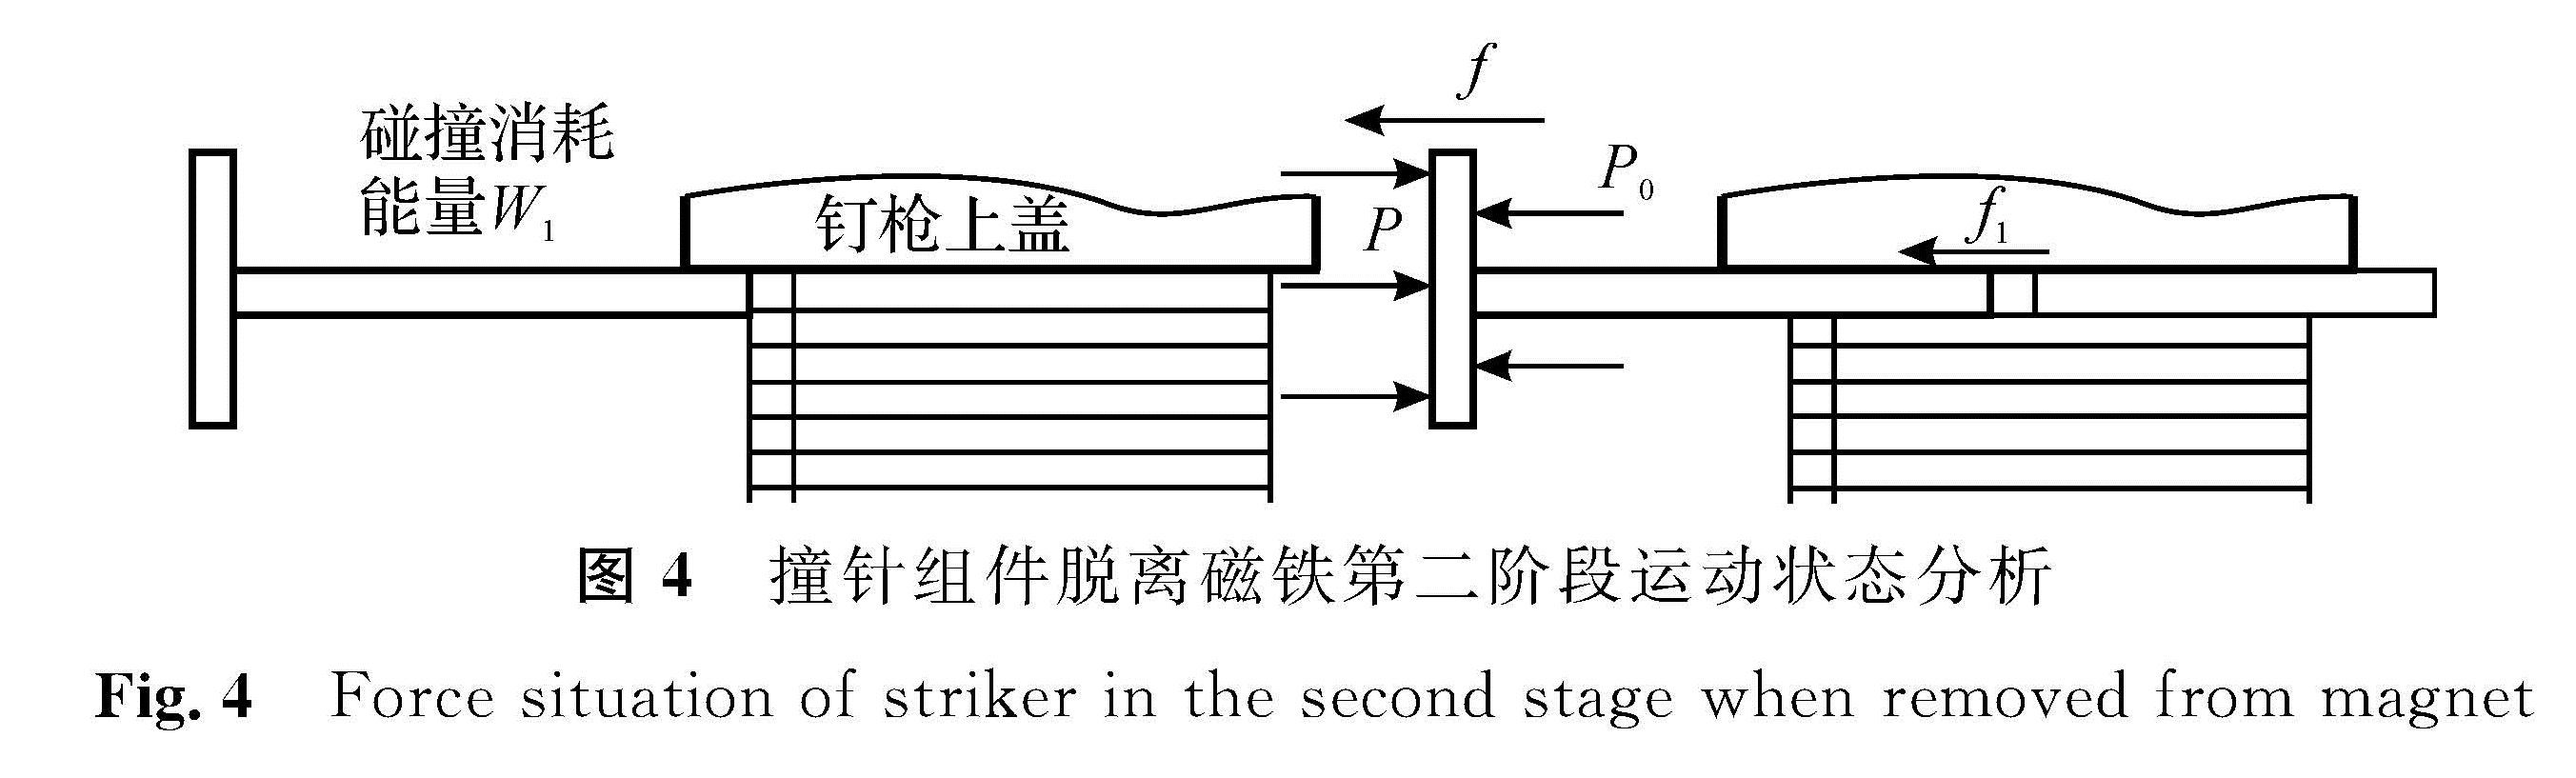 图4 撞针组件脱离磁铁第二阶段运动状态分析<br/>Fig.4 Force situation of striker in the second stage when removed from magnet